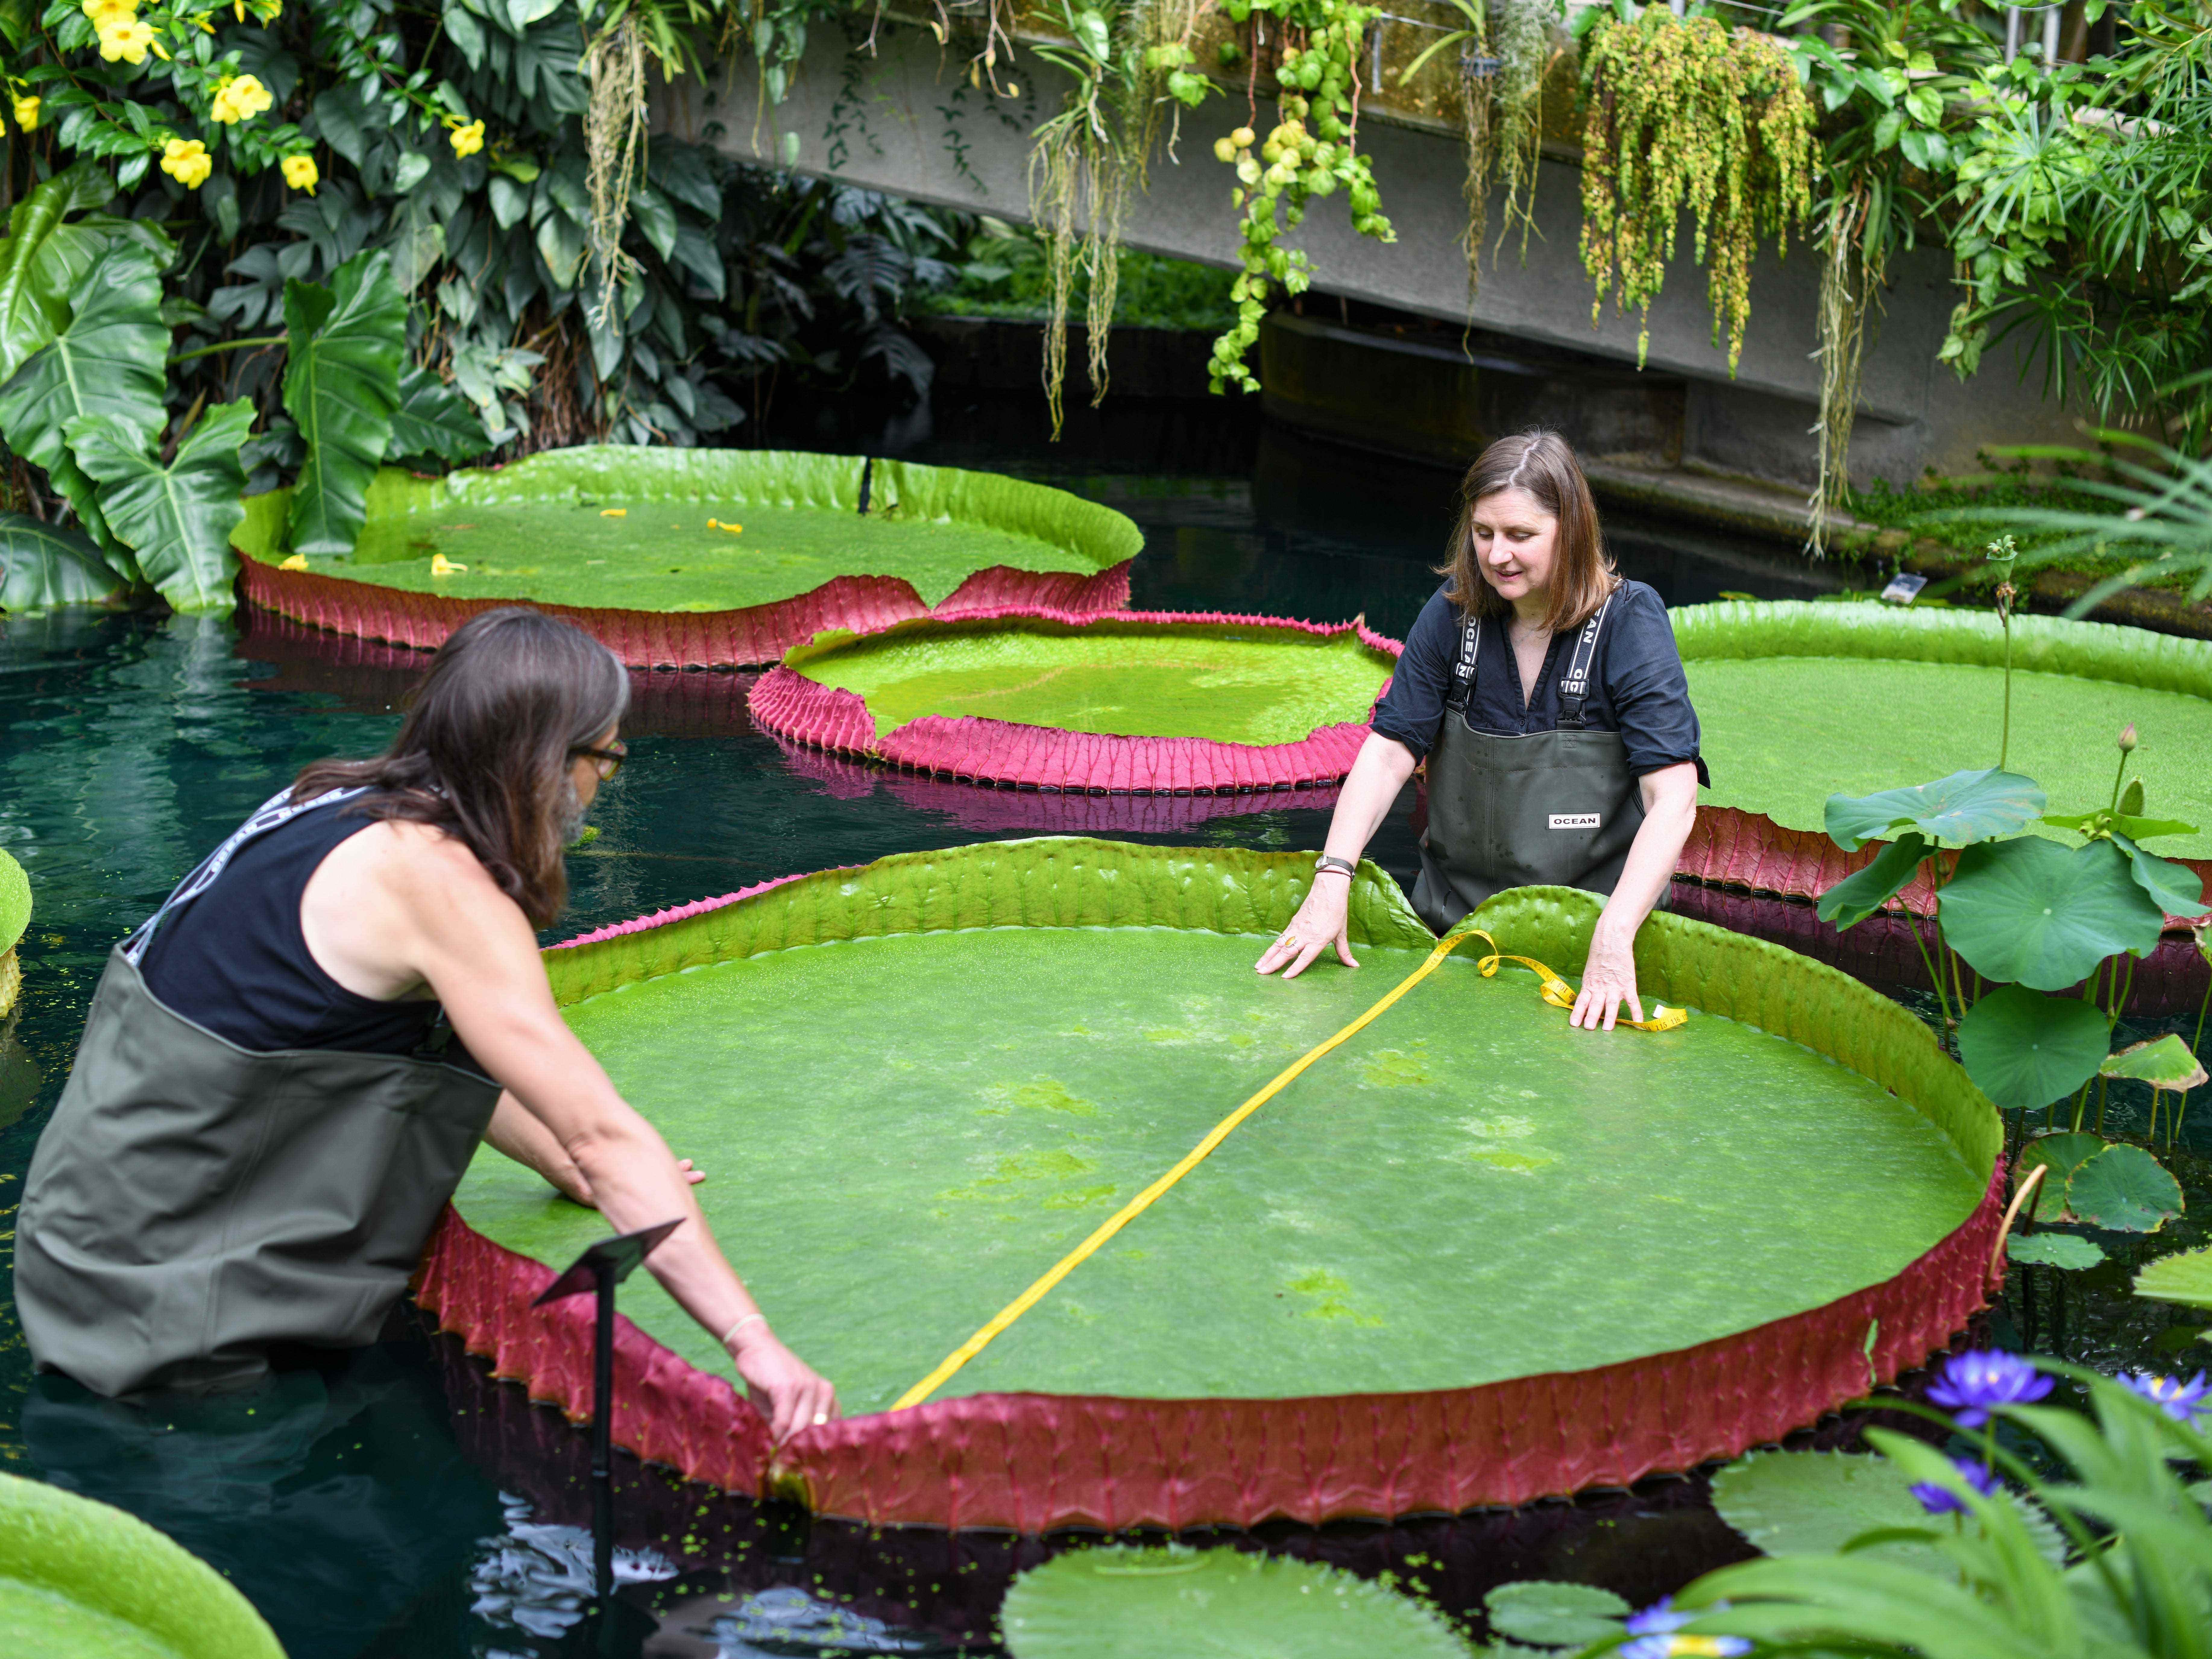 Carlos und Lucy messen die Seerose im Wasser, die größte Seerose der Welt